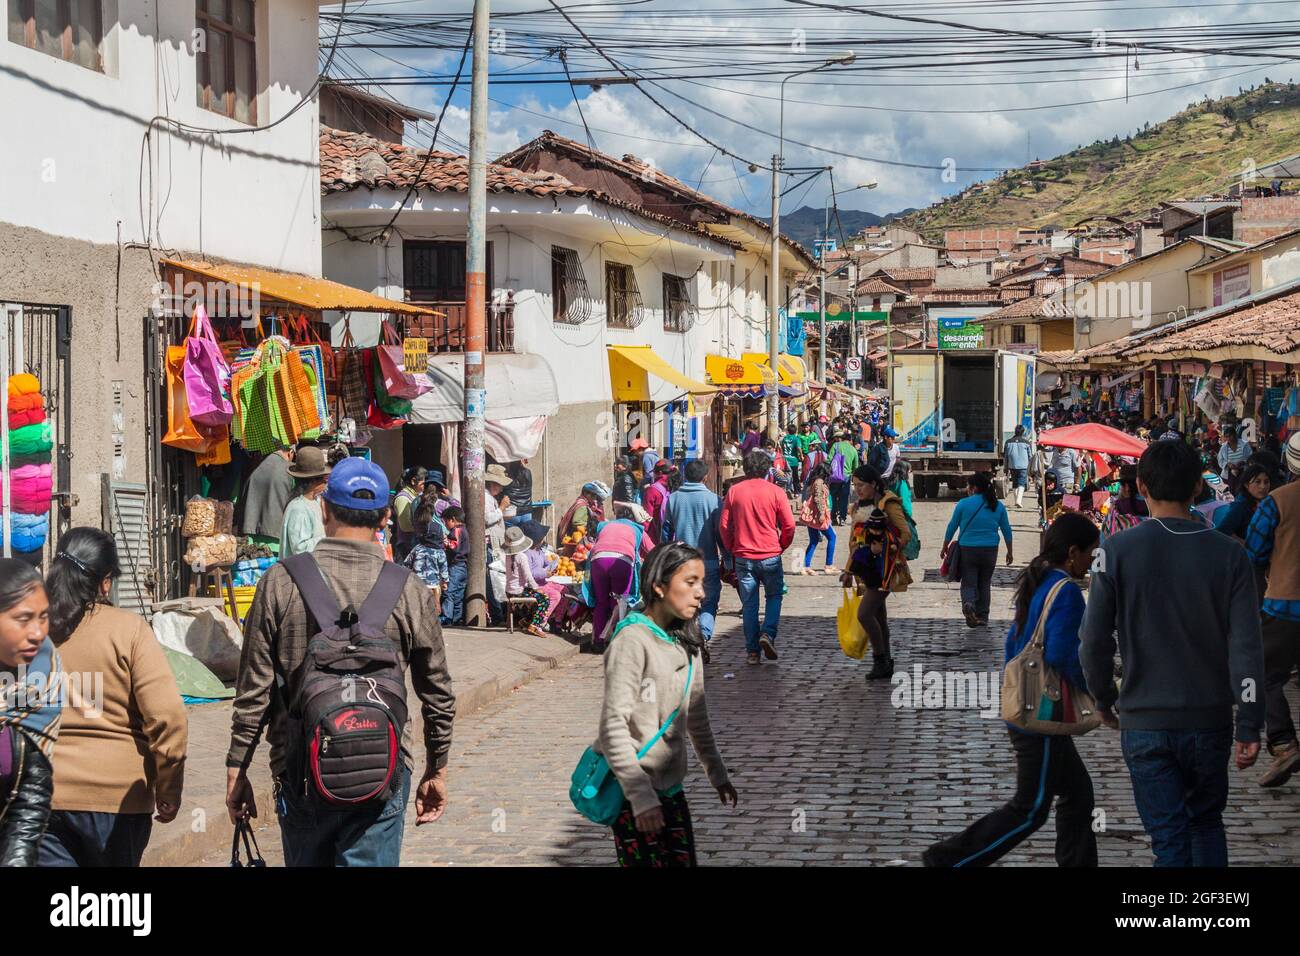 CUZCO, PERU - 23. MAI 2015: Menschen auf der Straße im Zentrum von Cuzco, Peru. Stockfoto